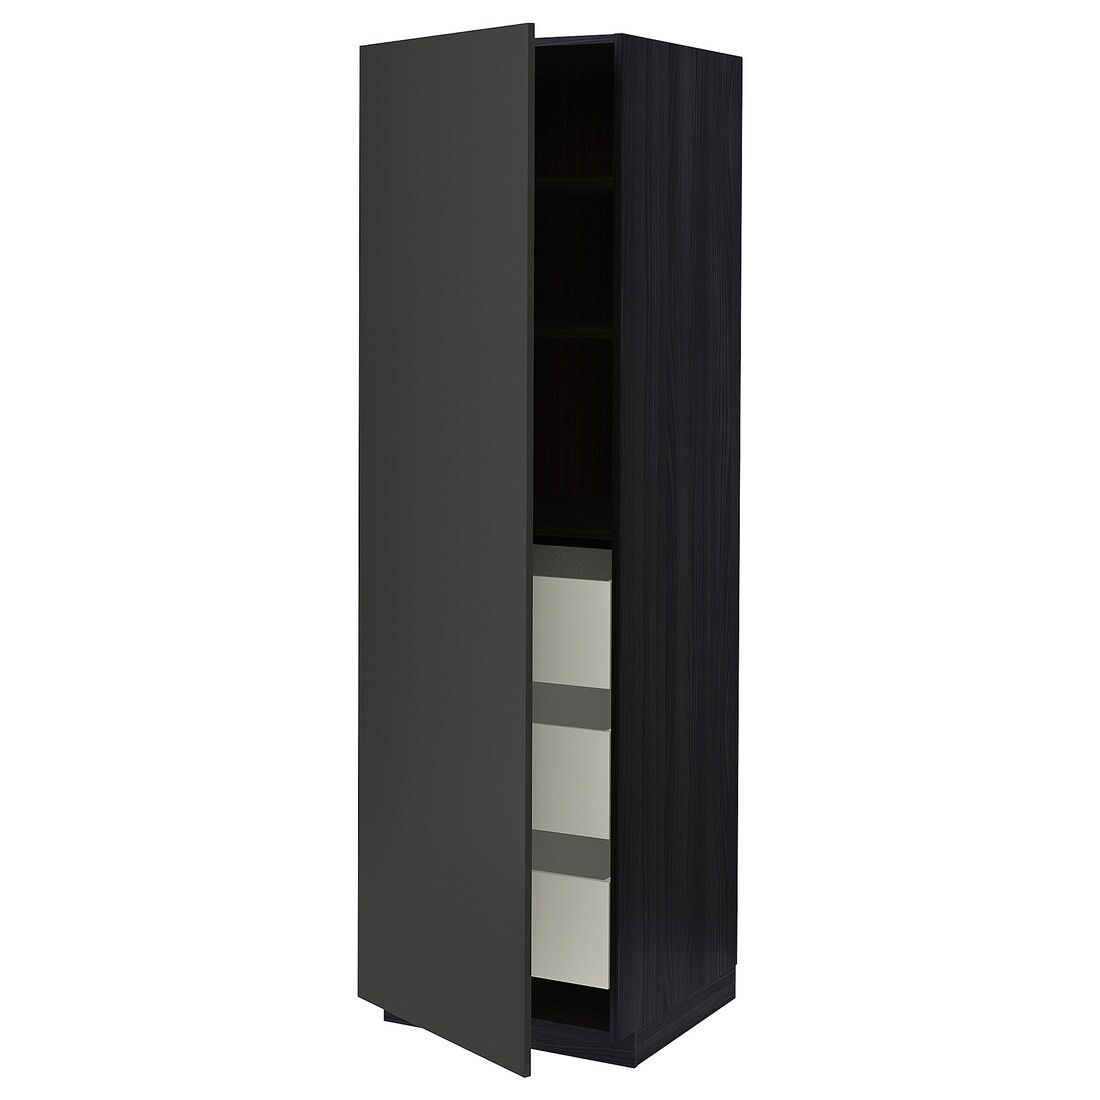 IKEA METOD МЕТОД / MAXIMERA МАКСИМЕРА Шкаф высокий с ящиками, черный / Nickebo матовый антрацит, 60x60x200 см 59497499 | 594.974.99